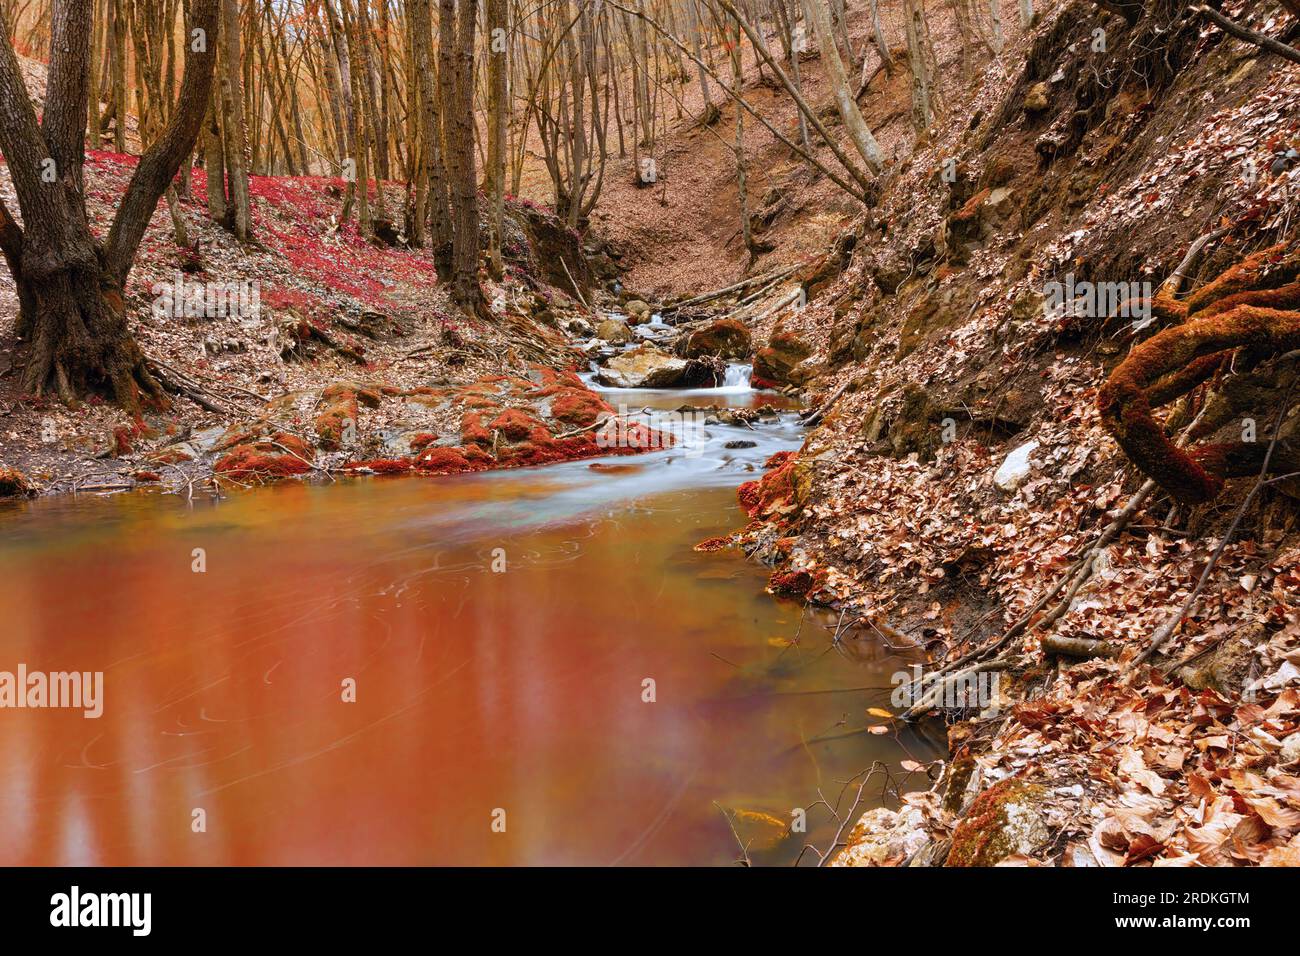 ruisseau de montagne sauvage en automne, rivière coulant dans les bois, belles couleurs d'automne orange et rouge Banque D'Images